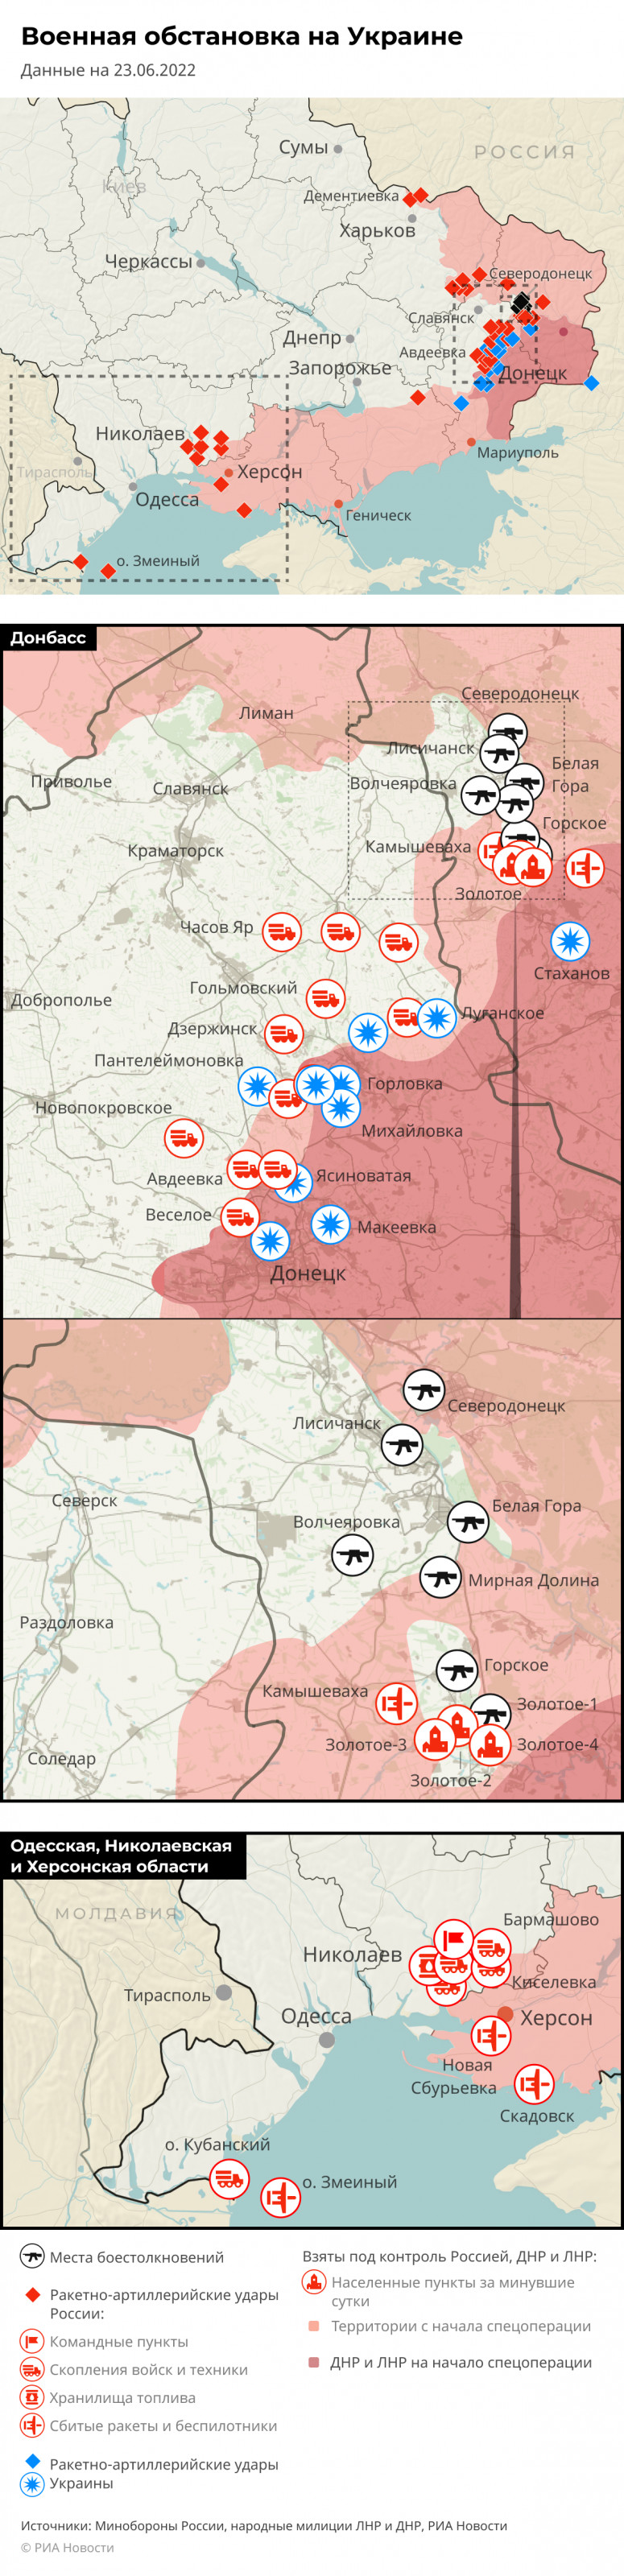 Карта спецоперации Вооруженных сил России на Украине на 23.06.2022